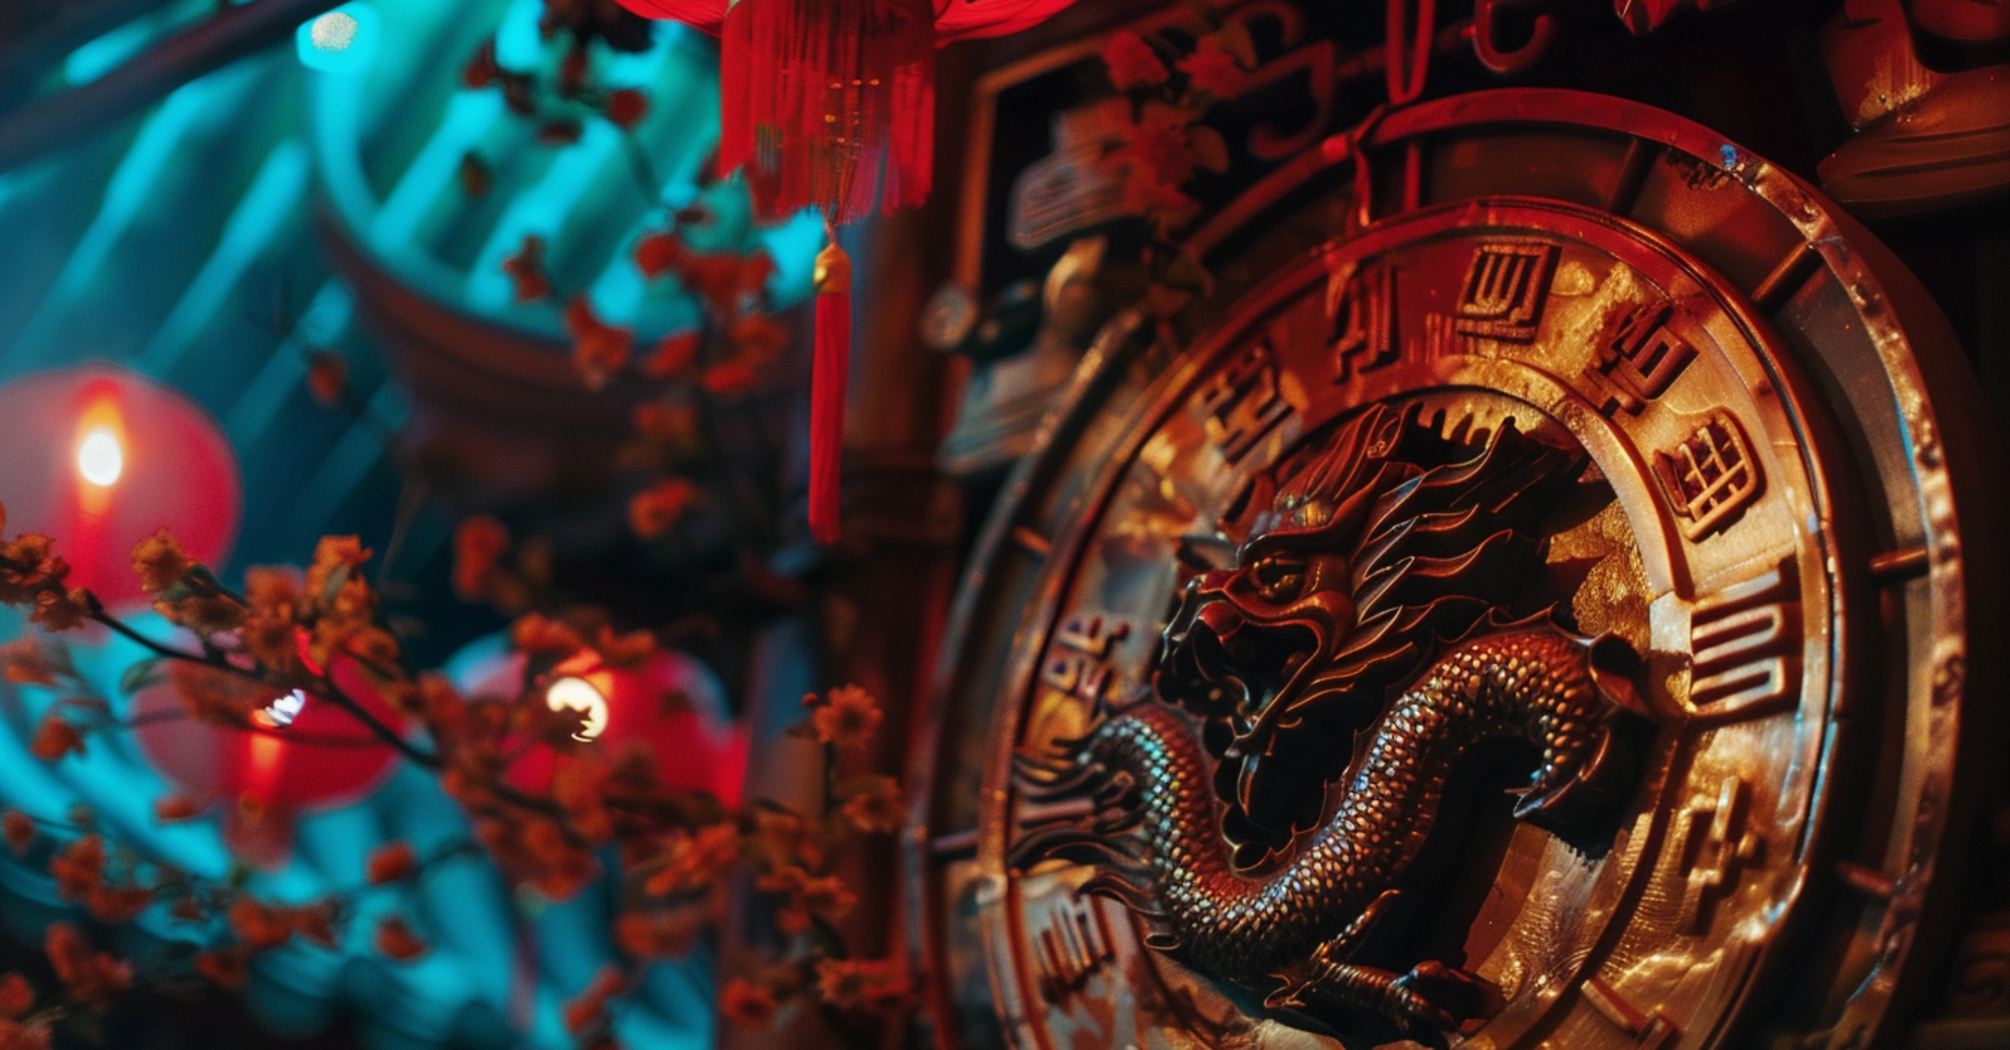 З'являться можливості для самовдосконалення: китайський гороскоп на 11 березня